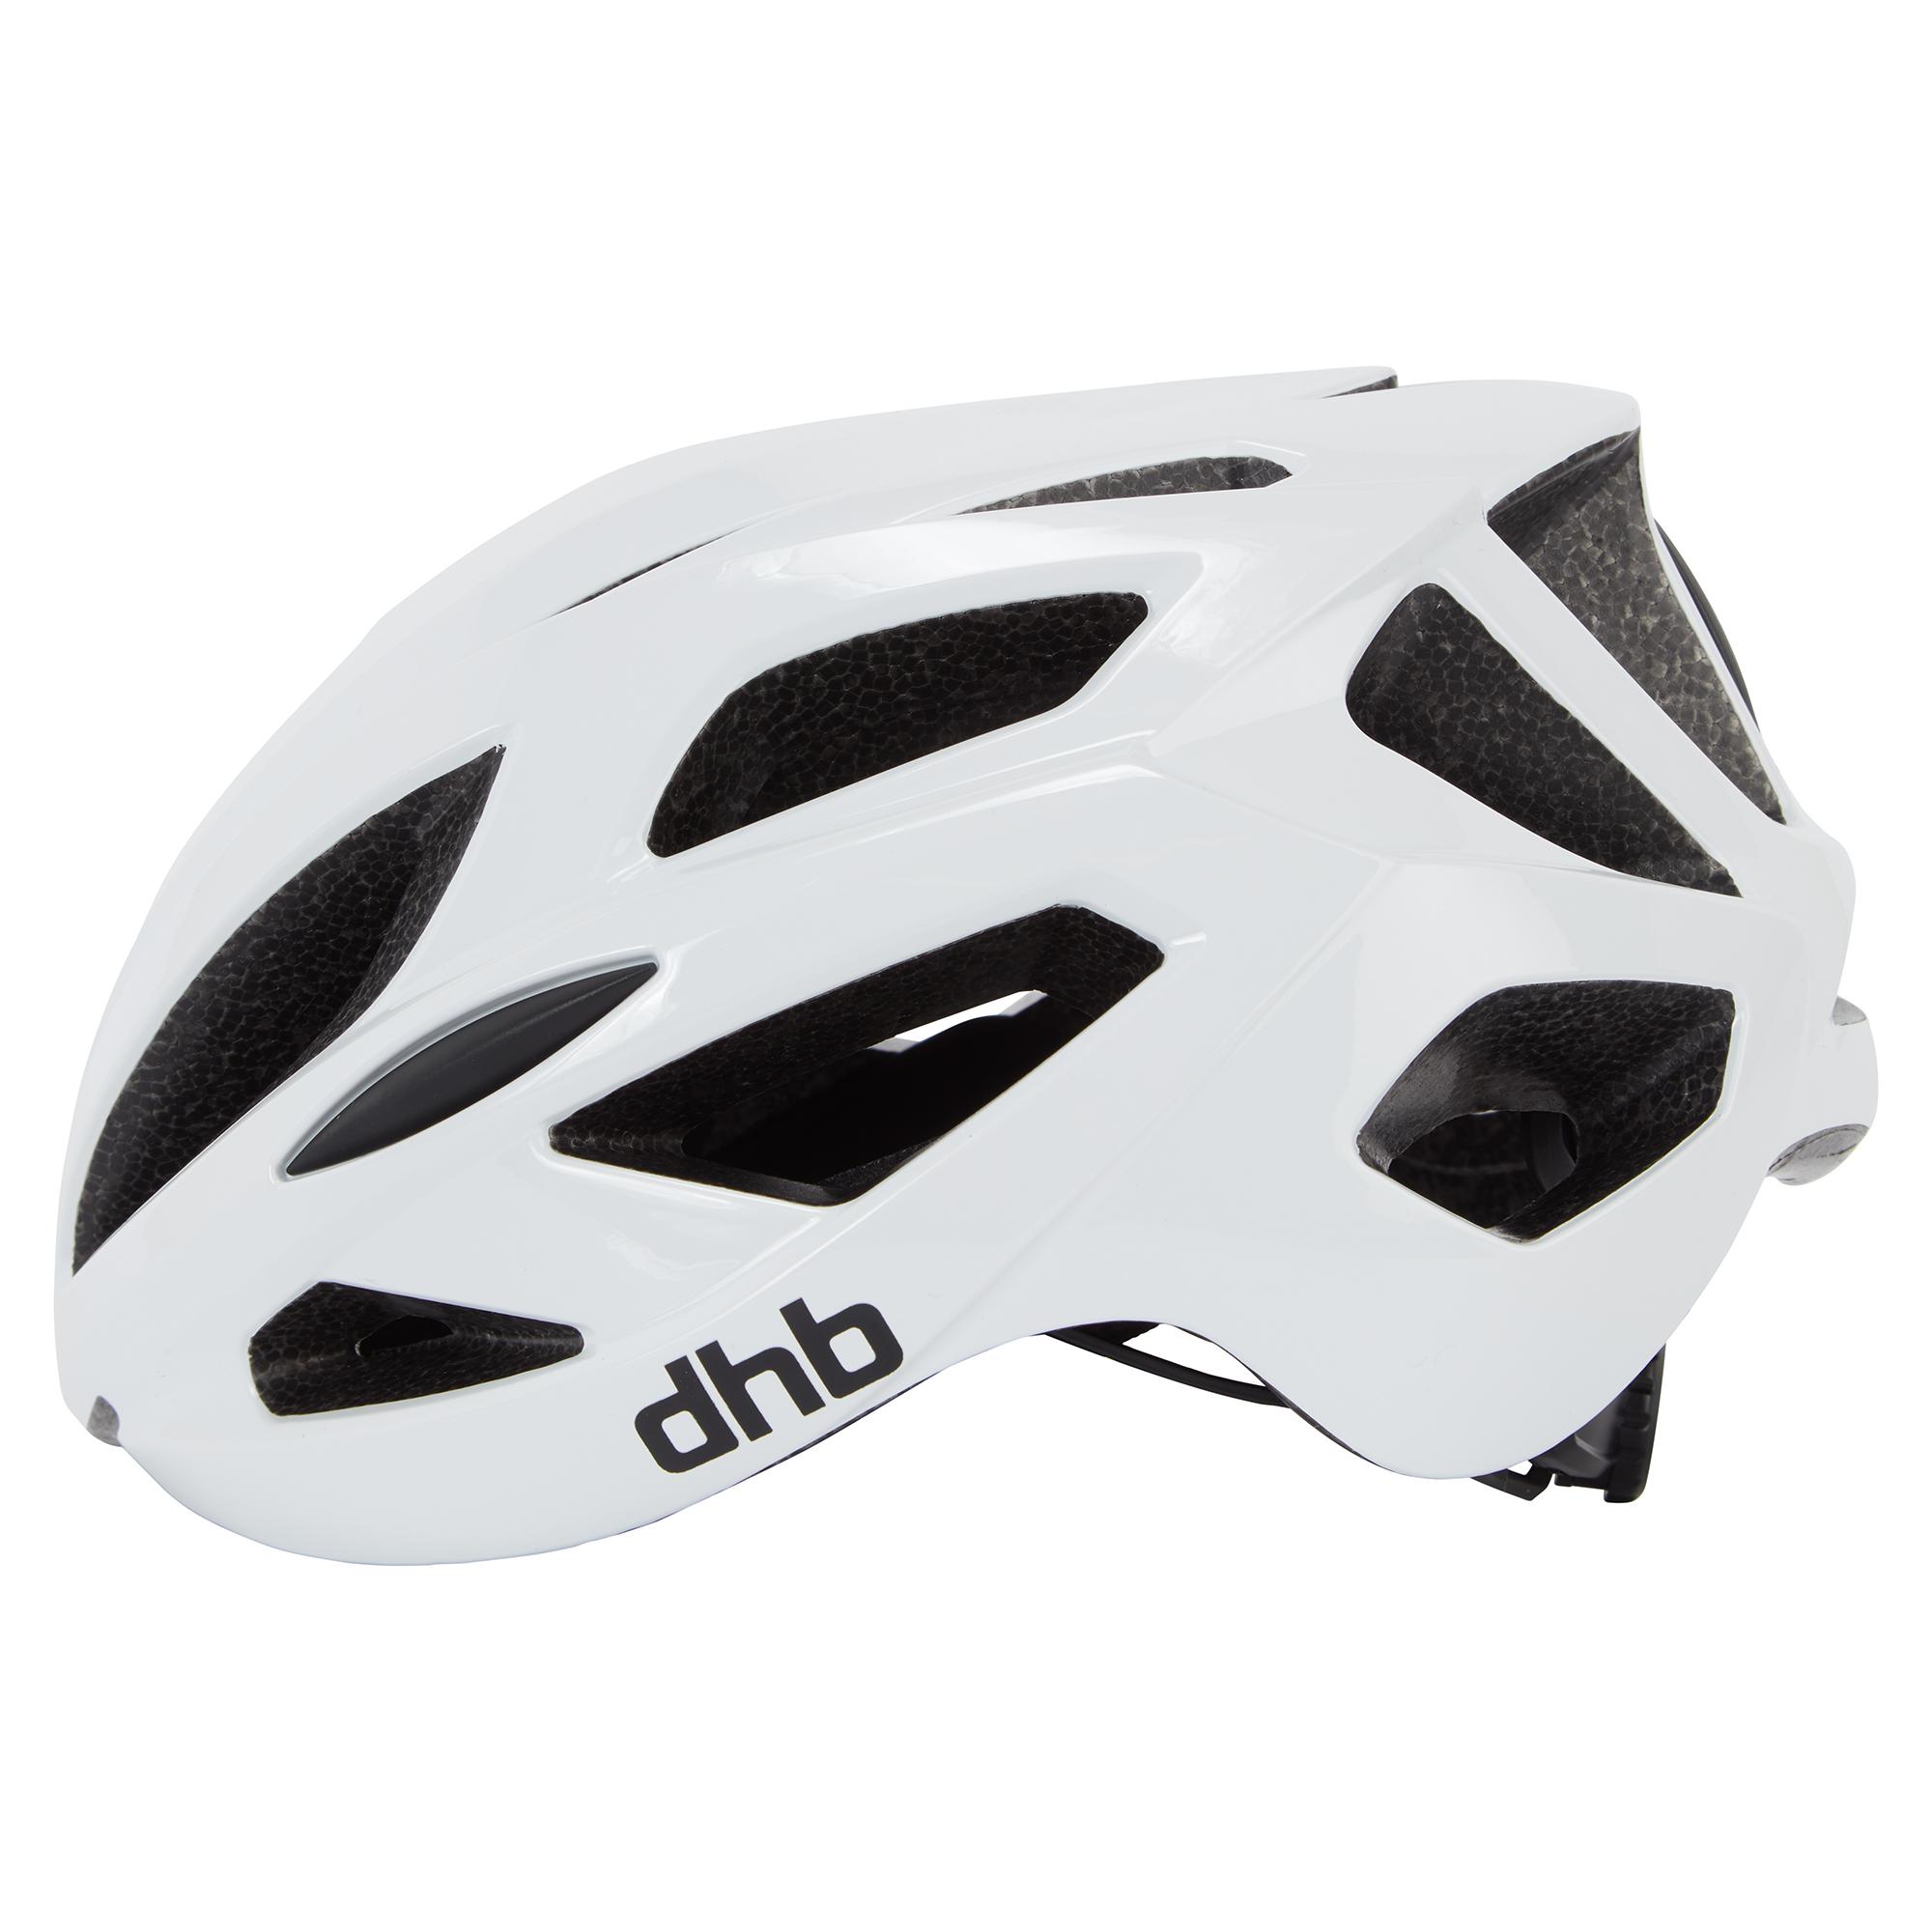 Dhb R3.0 Road Helmet - White